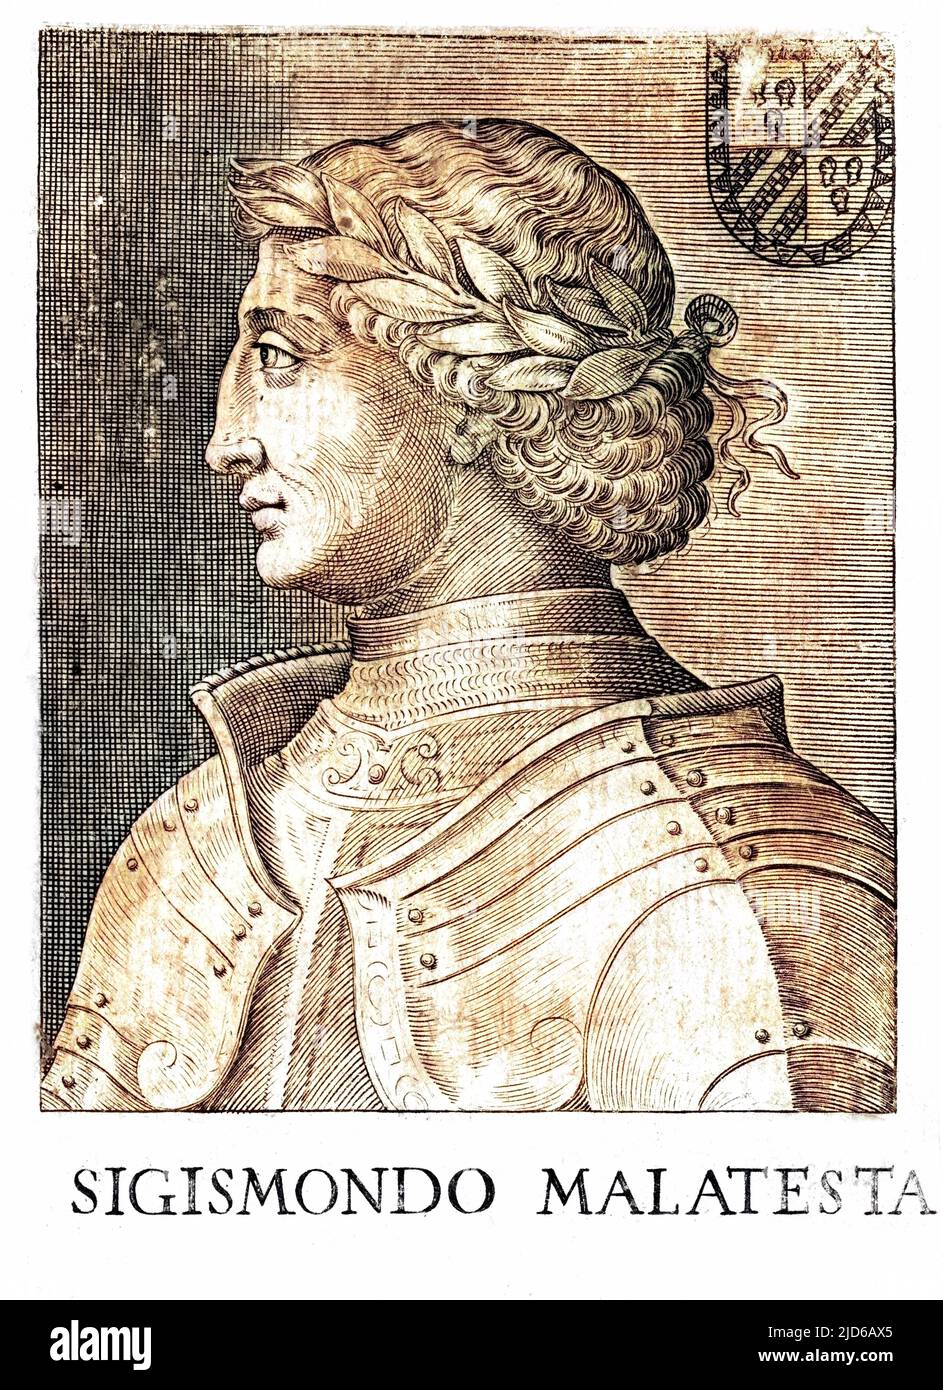 SIGISMONDO PANDOLFO MALATESTA italienischer Adliger, Mitglied des Herrscherhauses von Rimini, ein bekannter Mäzen der Künste. Colorierte Version von : 10164160 Datum: 1417 - 1468 Stockfoto